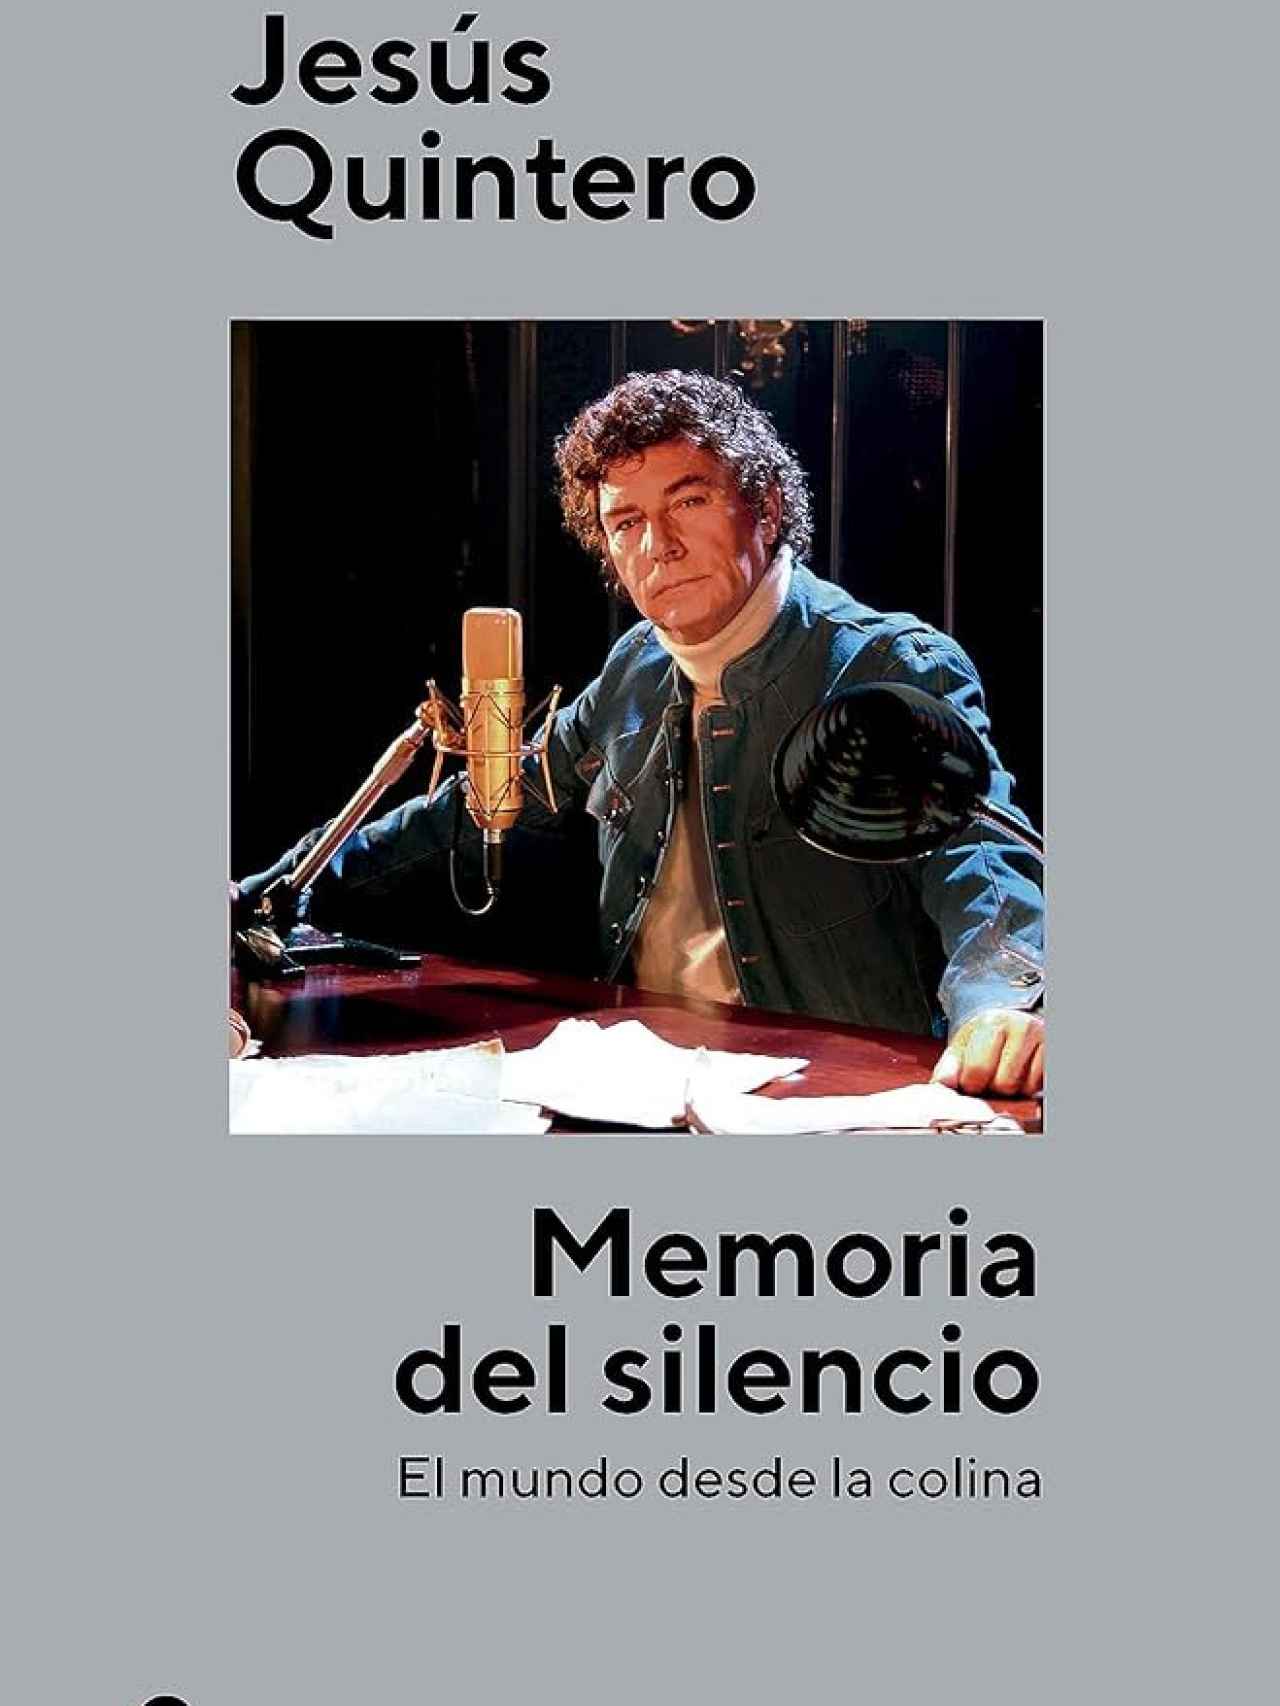 'Memoria del silencio', el nuevo libro sobre al maestro Jesús Quintero.